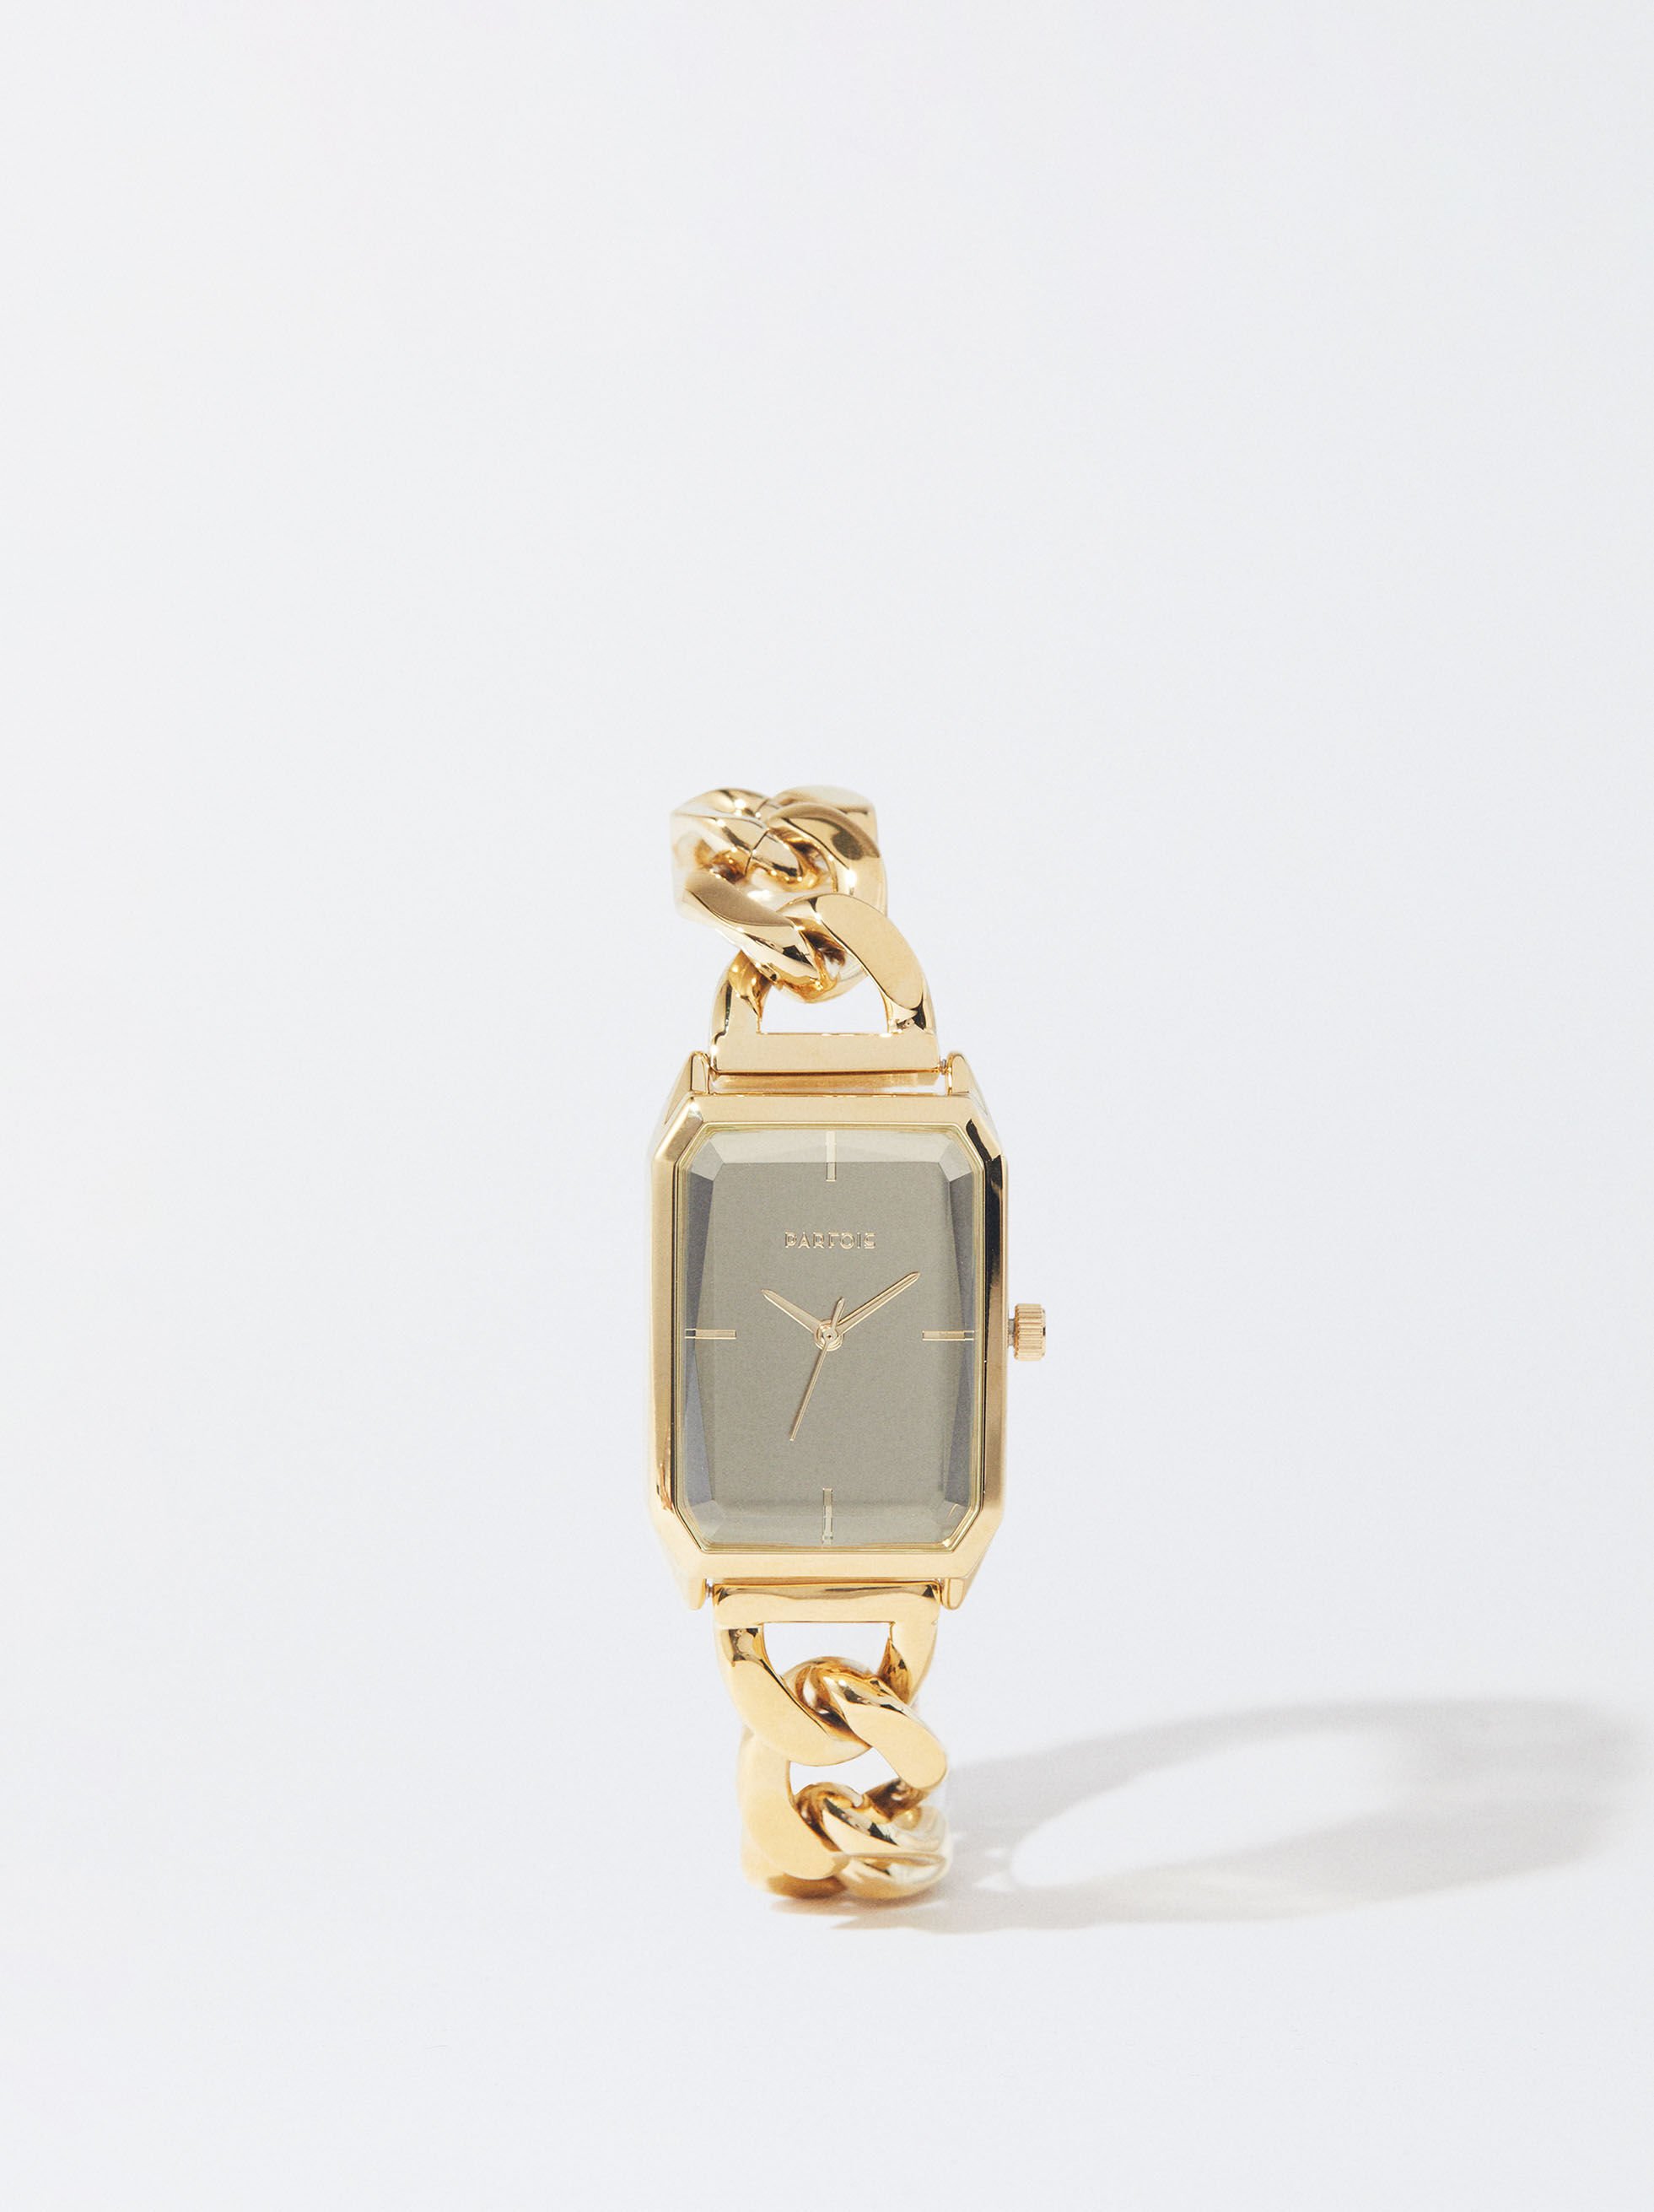 Đồng hồ Chanel nữ mặt vuông dây kim loại sang chảnh 3 màu 30mm  DWatch